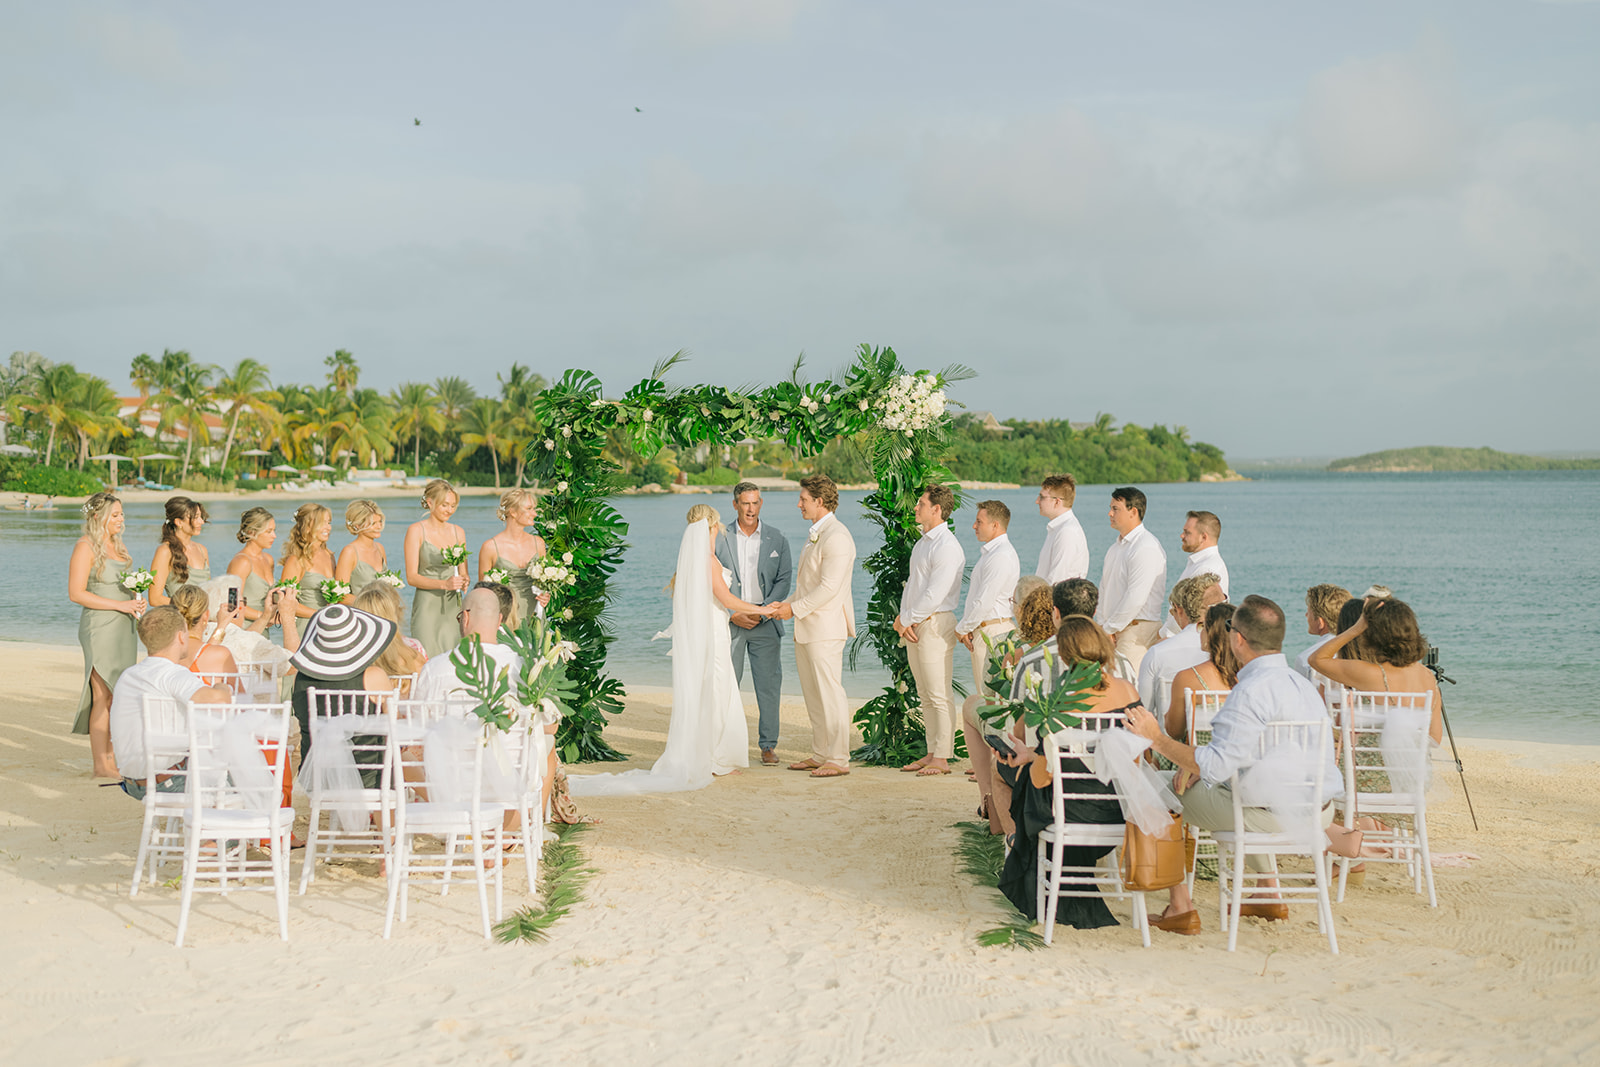 "Luxury Wedding Photography on Antigua Island"
